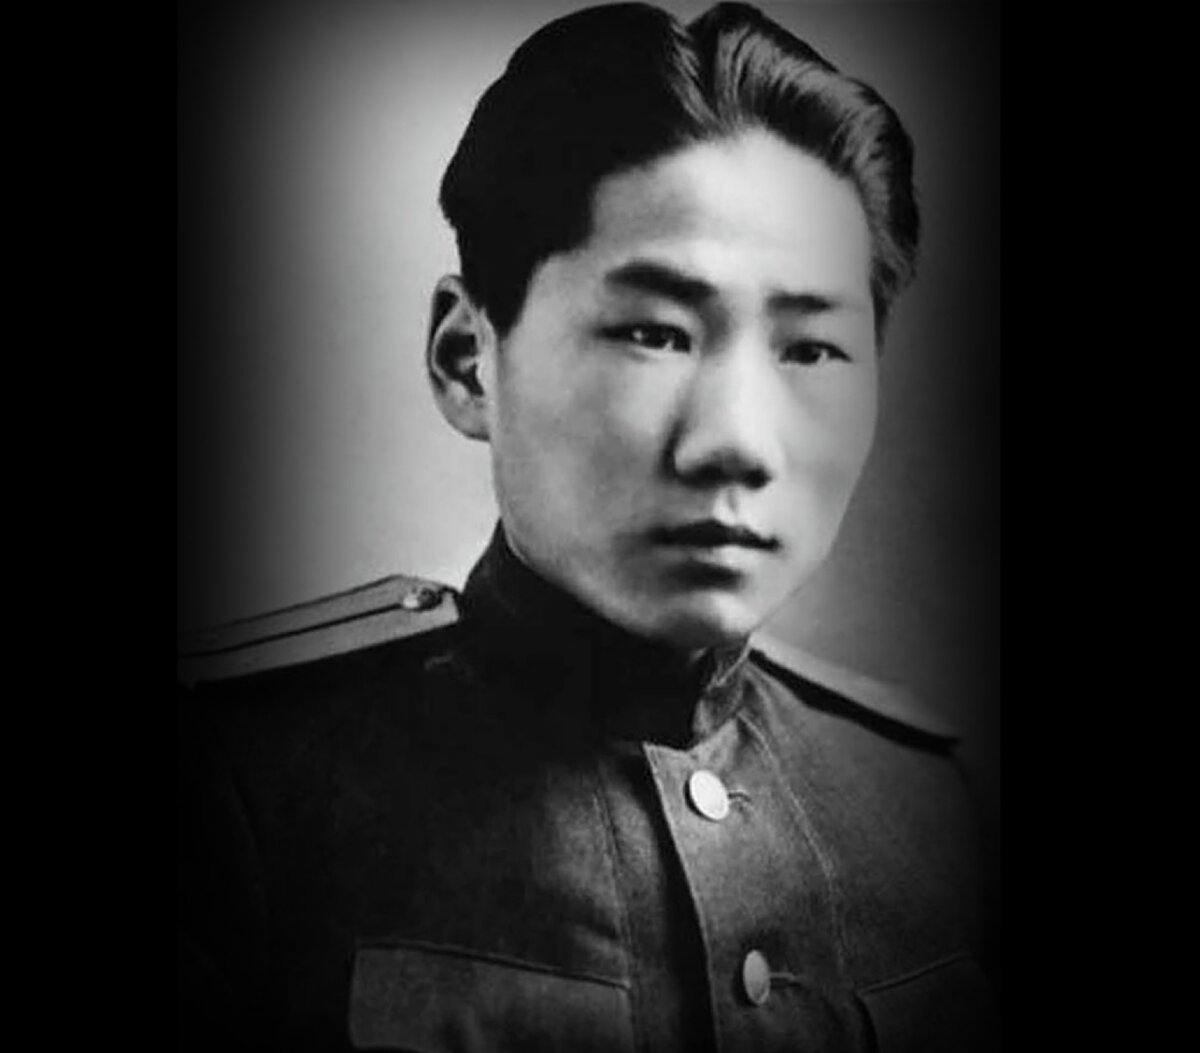 Мао цзэдун фото в молодости